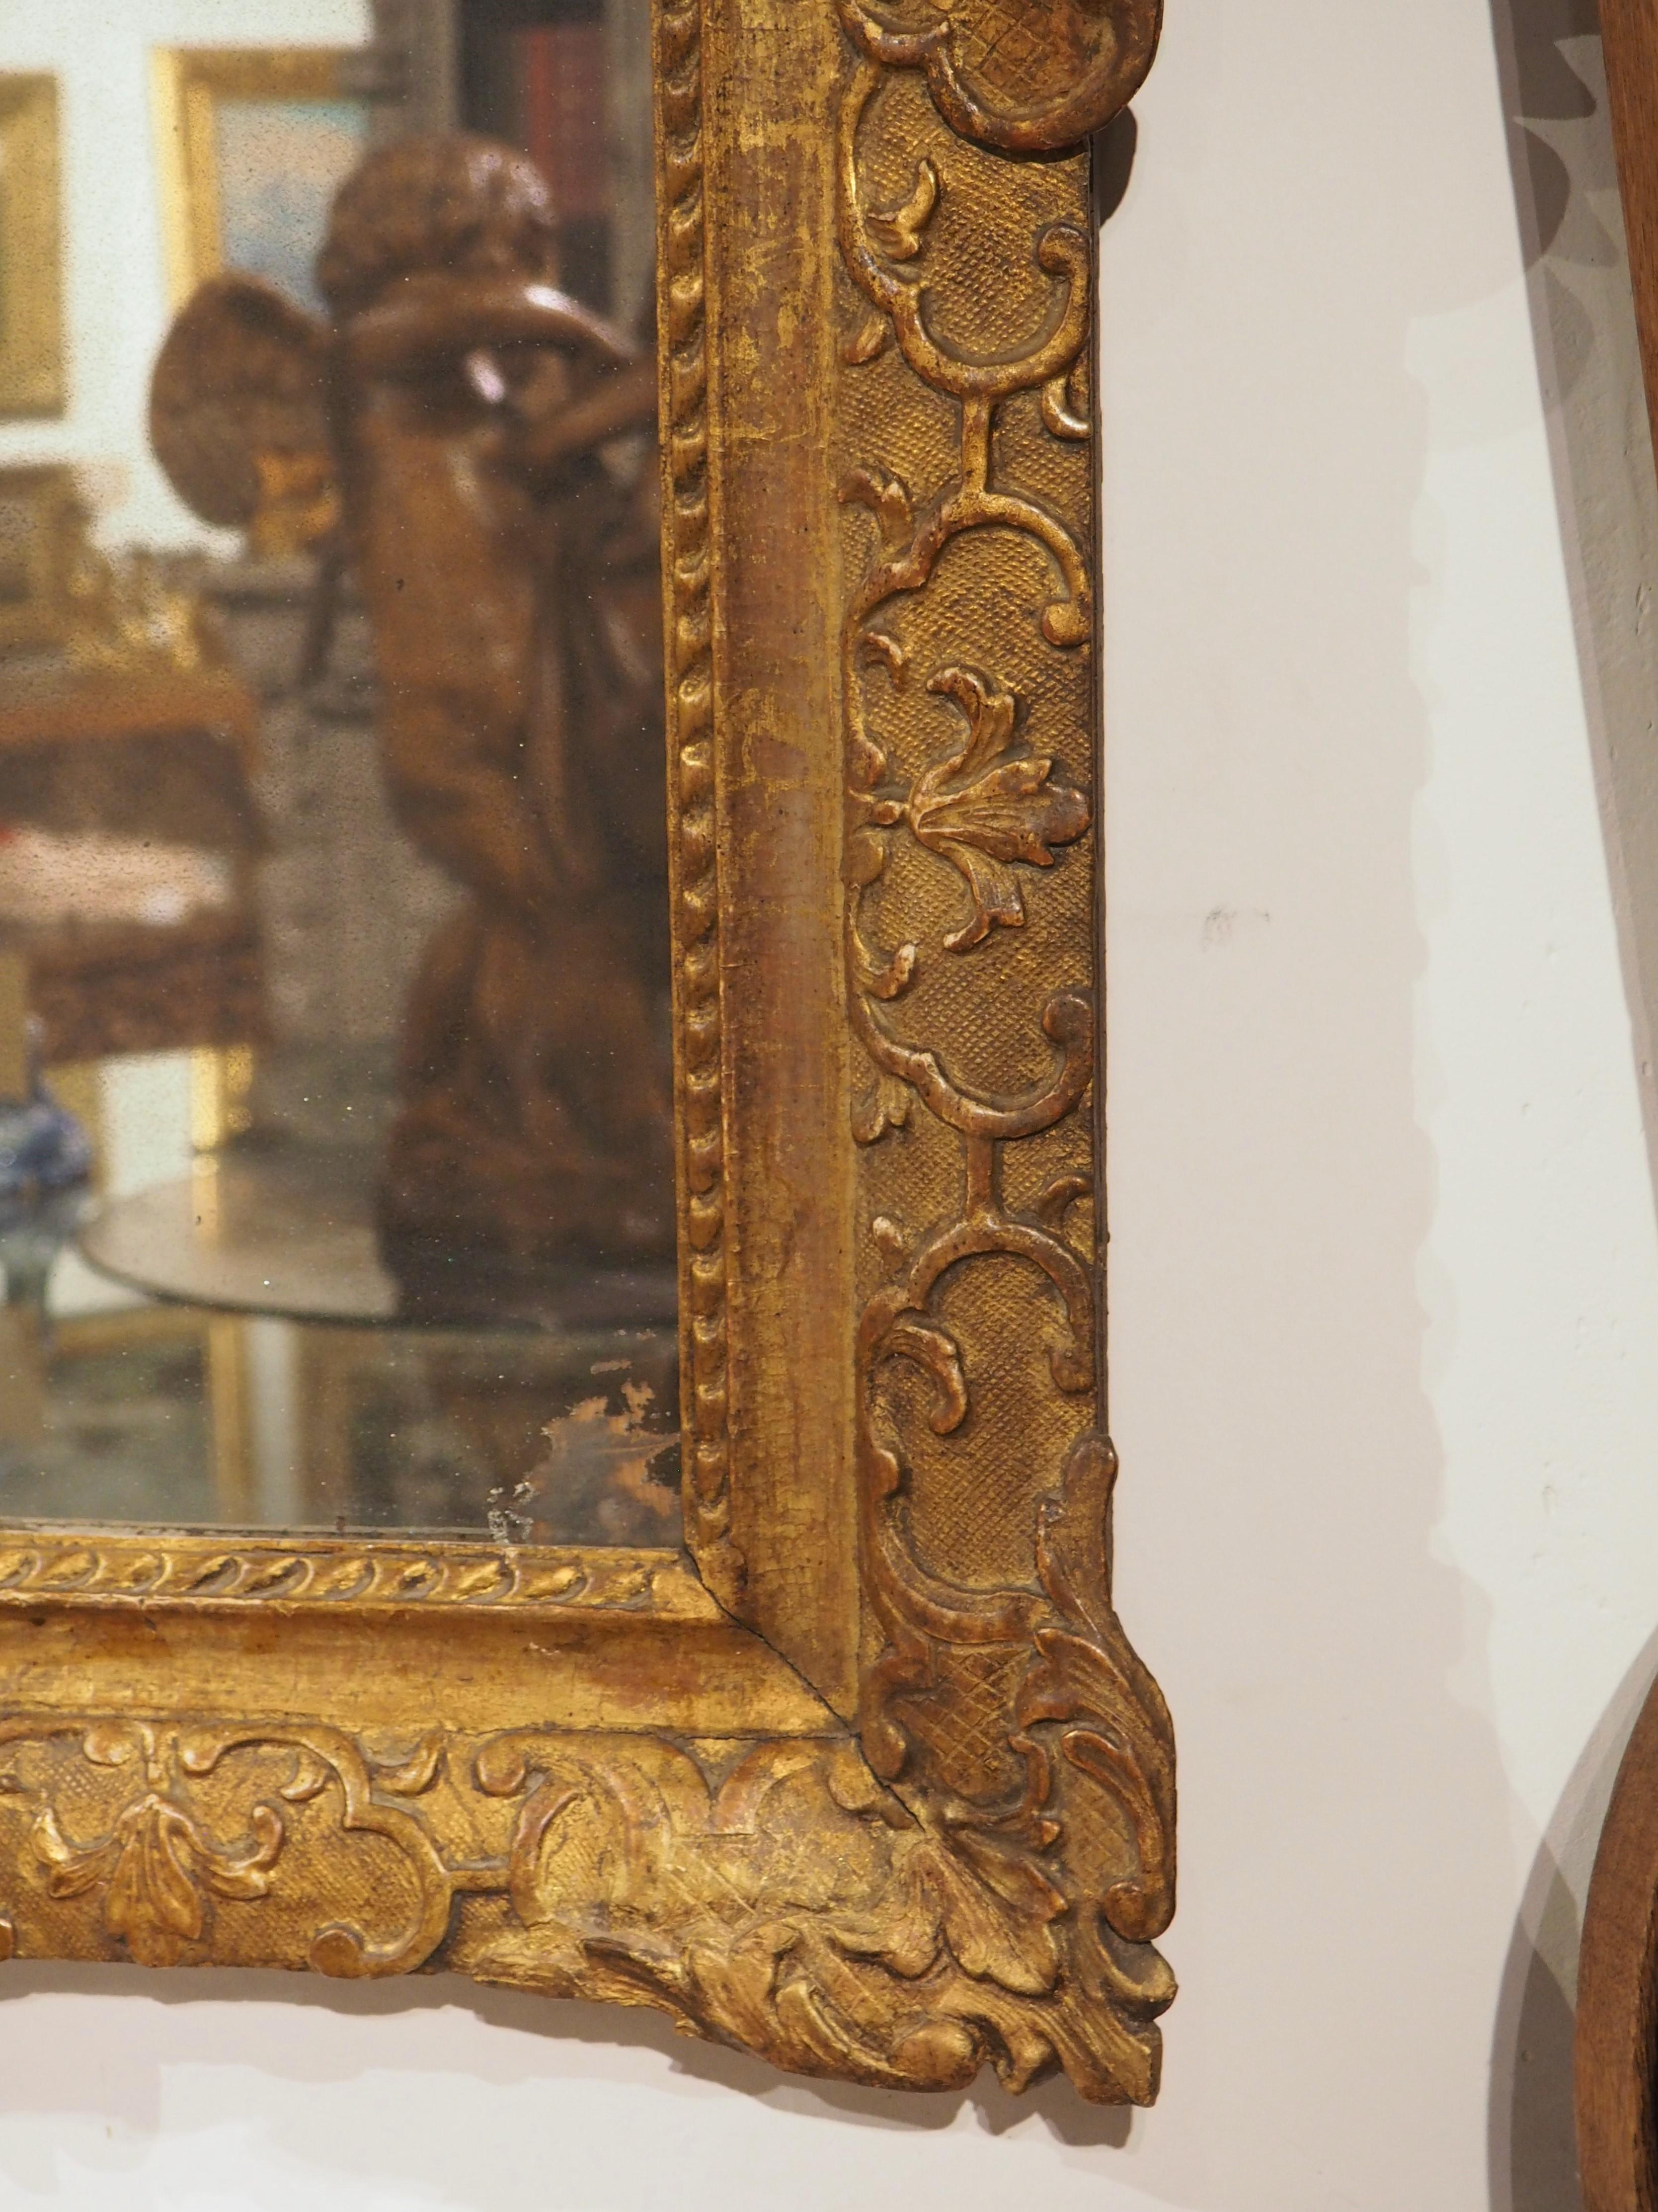 Ce miroir d'époque Louis XIV présente des motifs sculptés parmi les plus élégants. Il s'agit de motifs tels que le lambrequin, la feuille d'acanthe, les attributs martiaux, les palmettes, les fonds à motifs, le lys schématique ou la fleur de lys.